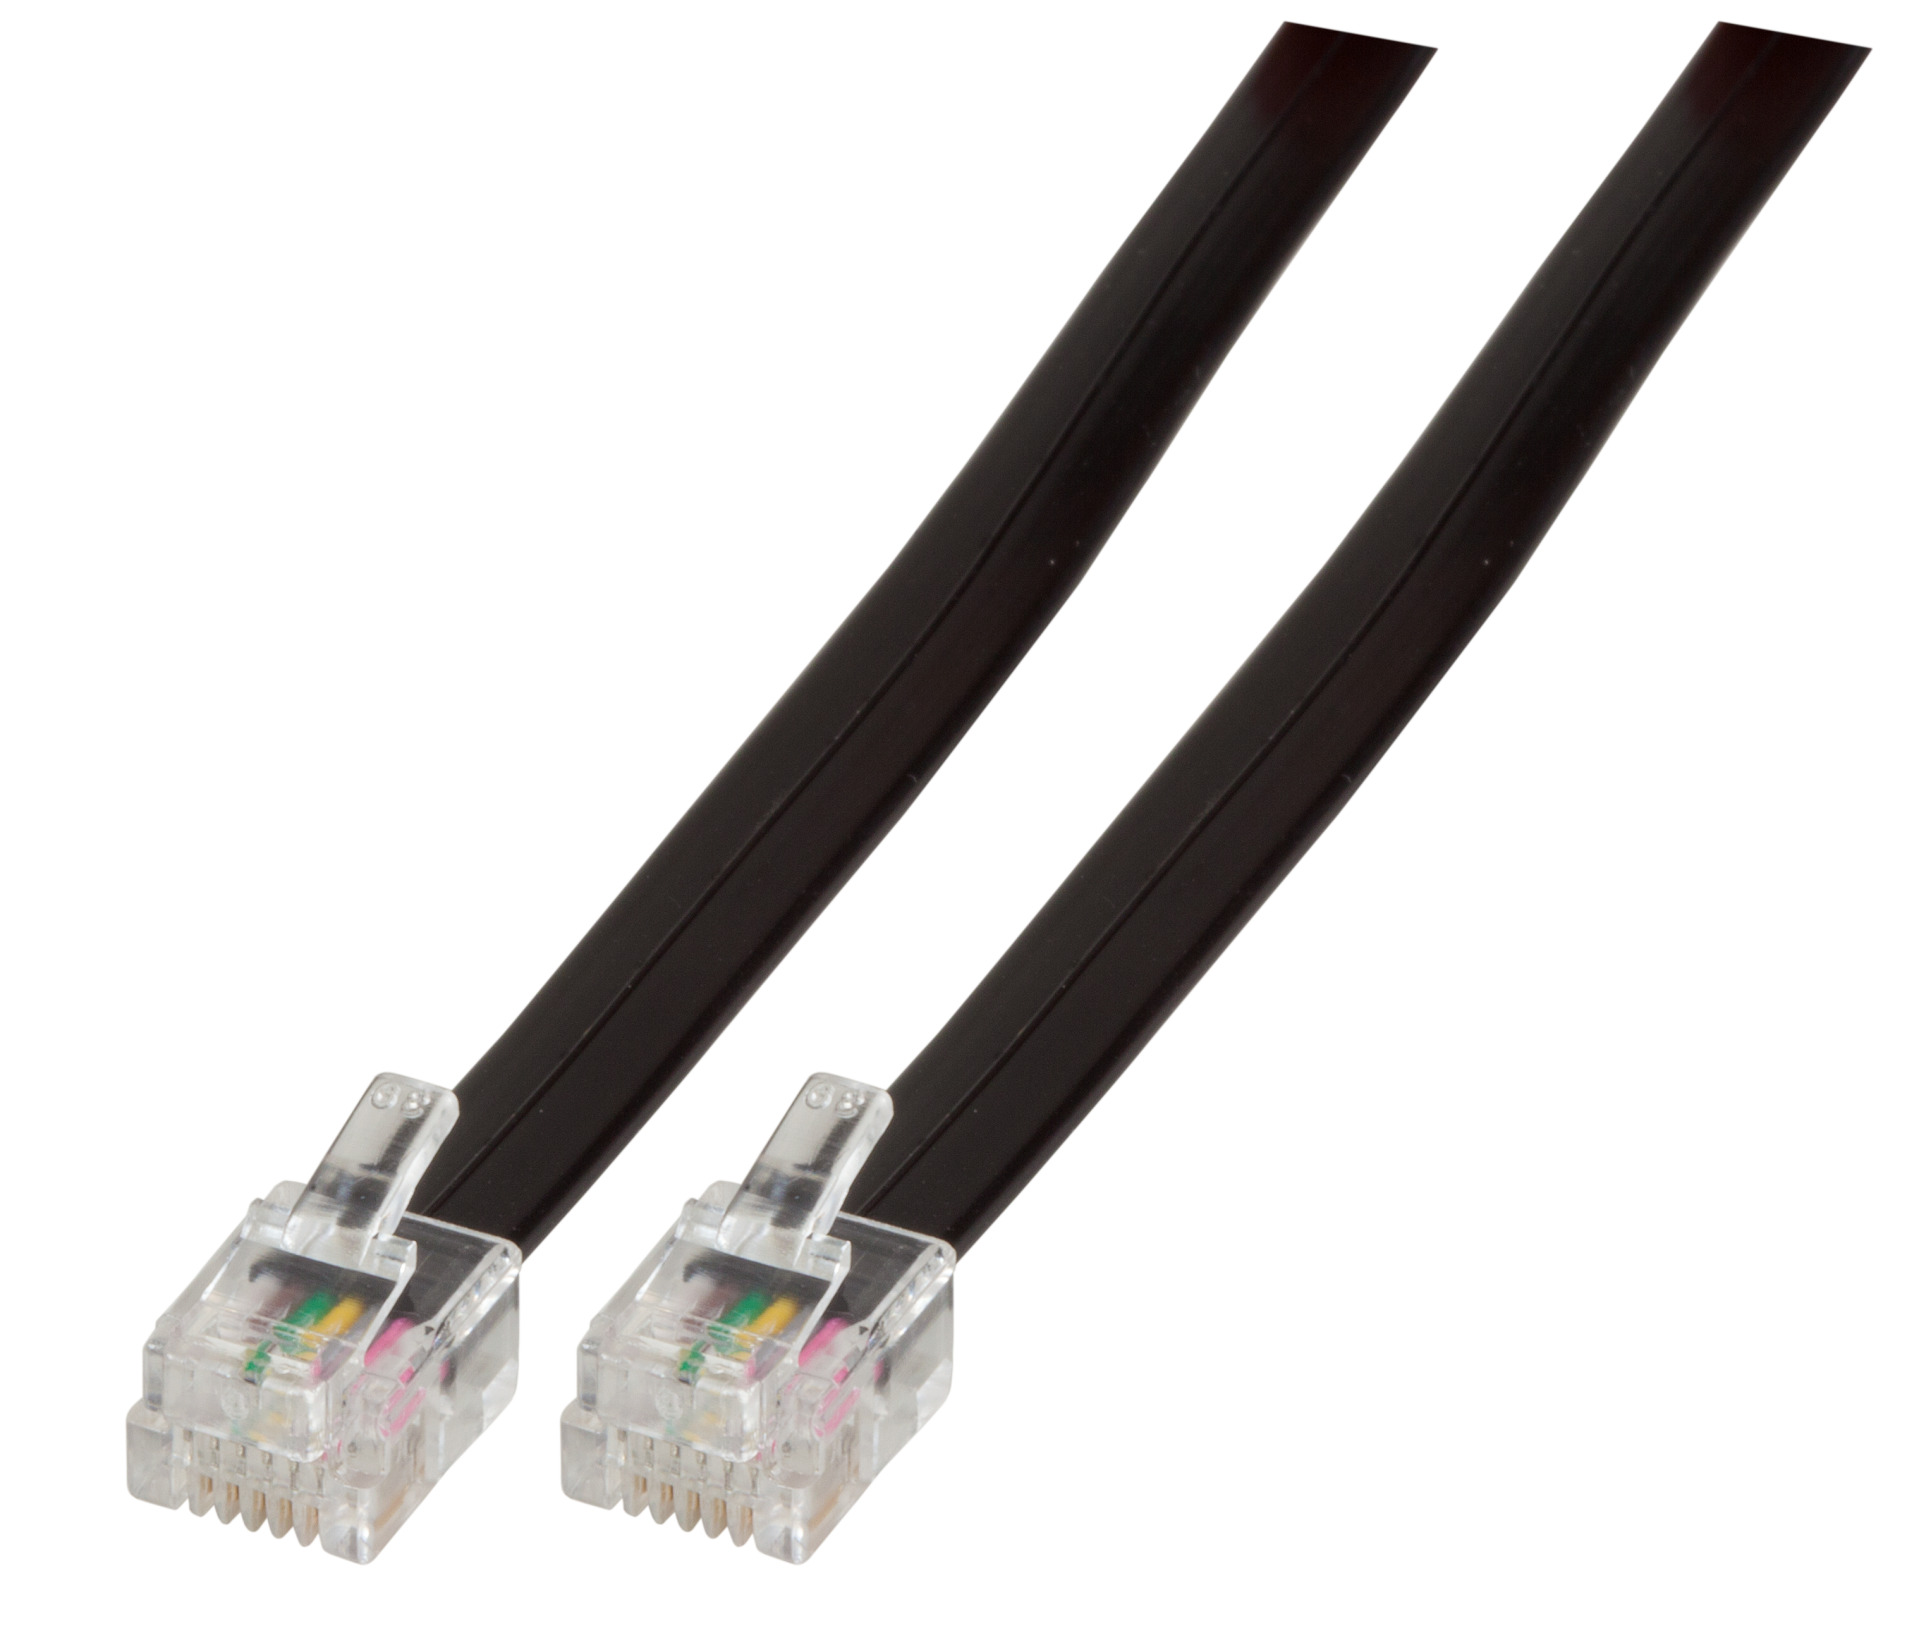 Modular Cable RJ12 (6/6) / RJ12 (6/6), 1:1, Black, 3 m